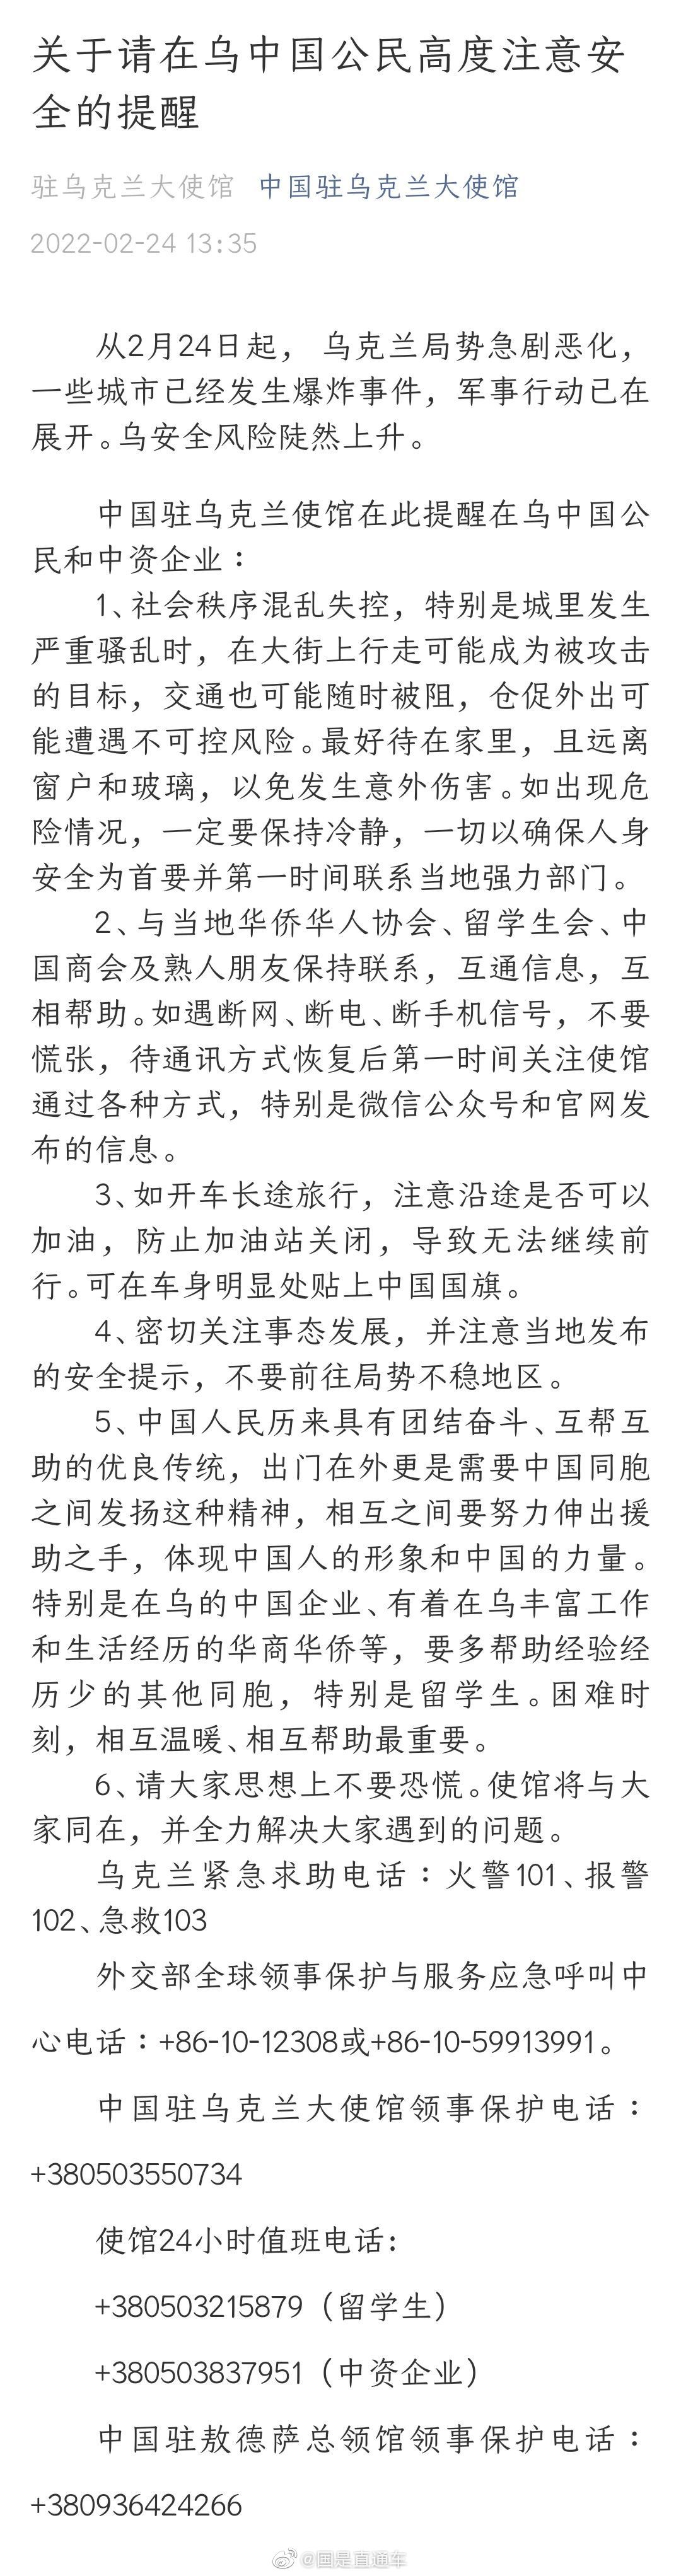 中国驻乌克兰大使馆提醒在乌中国公民做好安全防护 - 封面新闻